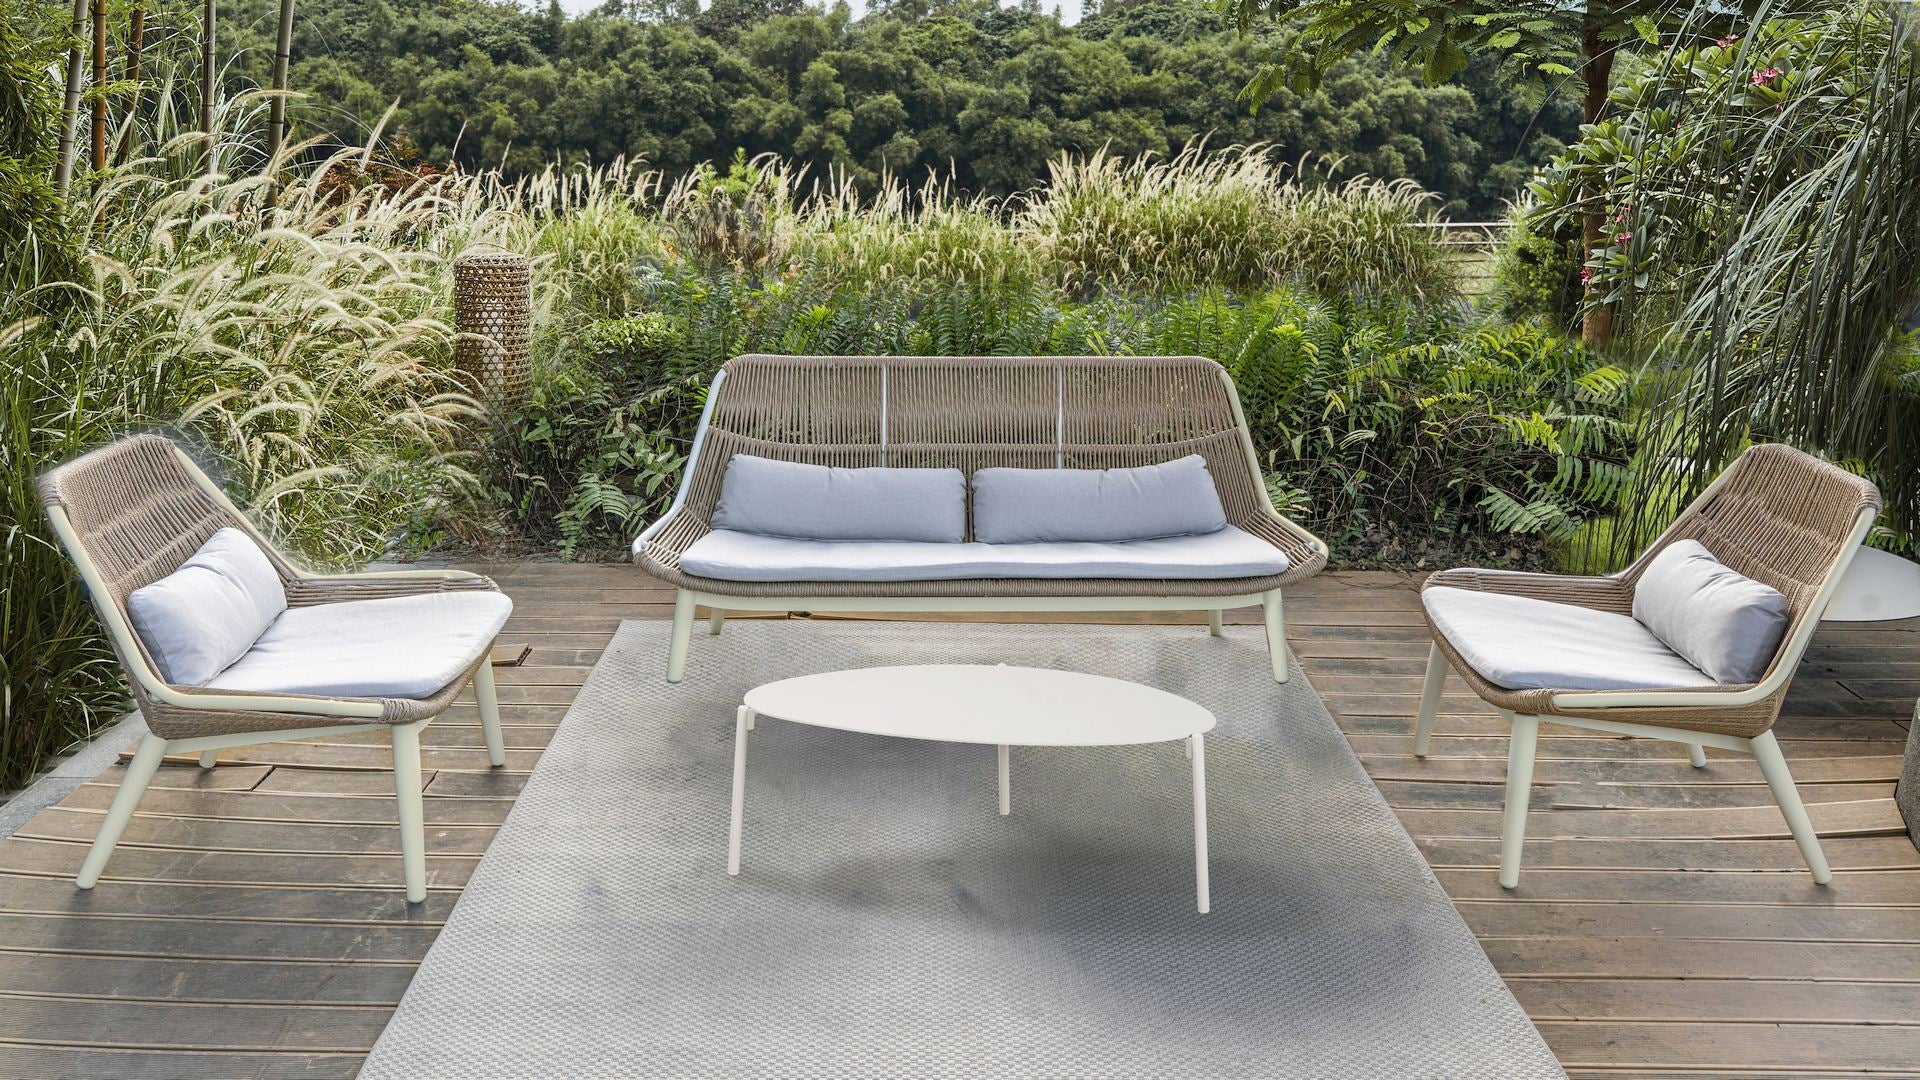 Die Celeste Loungegruppe in einem idyllischen Garten, bestehend aus einer Sitzbank, zwei Fauteuils und einem Couchtisch, umgeben von üppigem Grün und mit stilvollen, bequemen Kissen ausgestattet, bietet sie einen eleganten Entspannungsbereich im Freien.